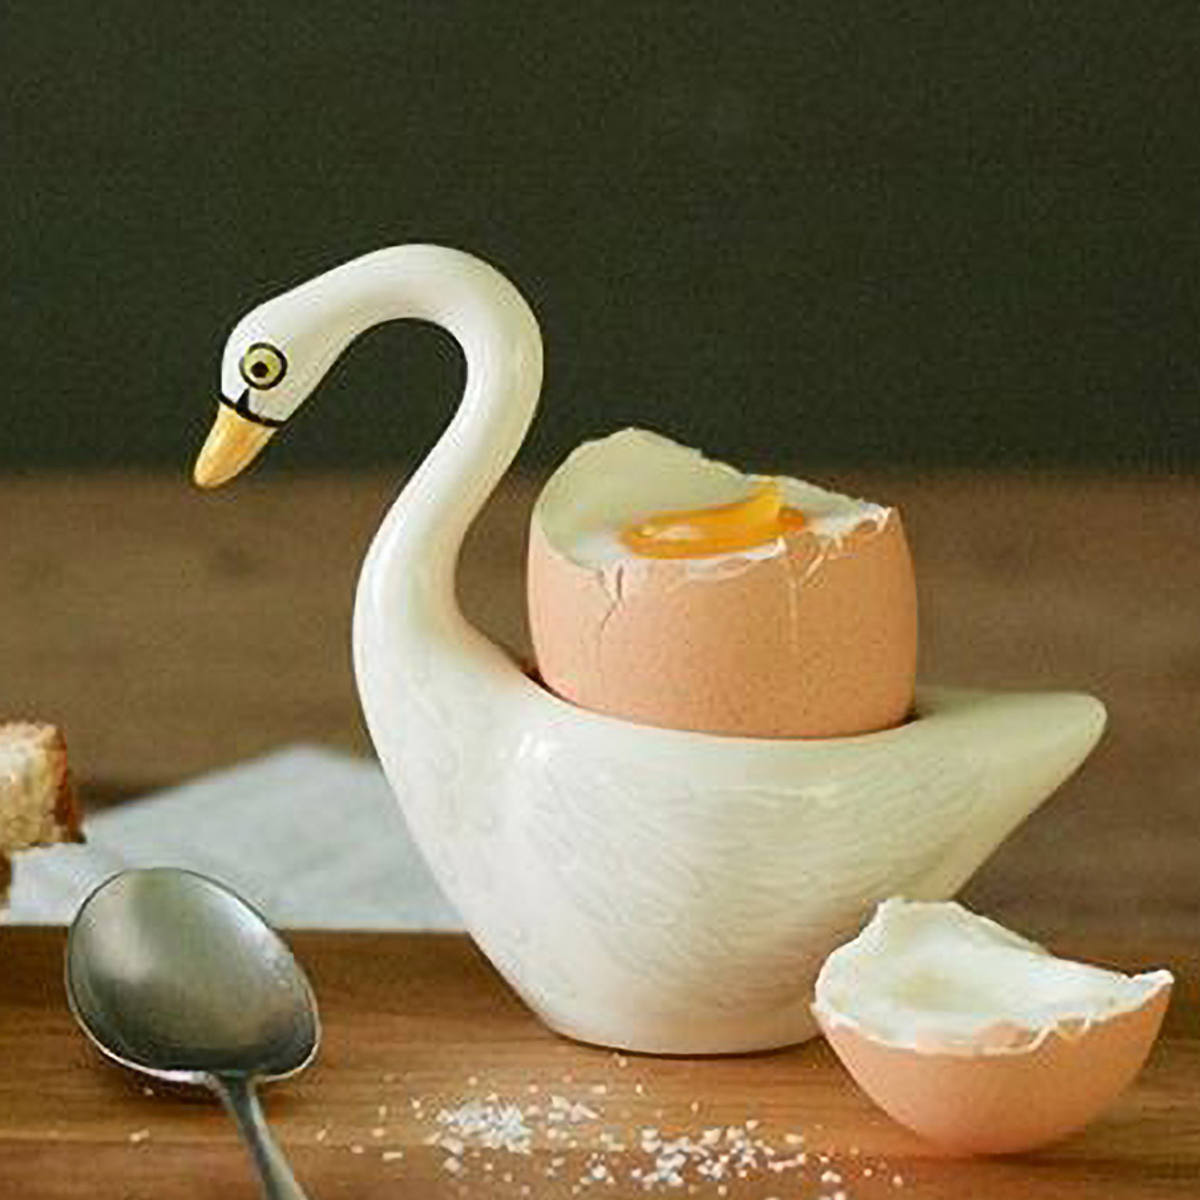 サイズ約 幅10.5×奥行5.2×高さ9（cm）内容量1個材質陶器生産国スリランカ製区分返品・キャンセル区分（小型商品）ギフトラッピングページを見るエッグカップ Hannah Turner Egg cups Swan White 白鳥おすすめポイント食卓が楽しくなるキュートなエッグスタンド『Swan White』ゆで卵を食べる際にお使いいただくエッグスタンドです。食卓が楽しくなるバードモチーフのかわいいデザインは、普段の生活を明るくほっこりさせてくれます。インテリアとしても使えるスタンド部分の窪みは底に穴が貫通していないため、小さなアクセサリーや鍵を置いておくスタンドとしても使えます。デスクでは散らばりやすいクリップをまとめて置いておくのも便利です。小さな鉢を入れてグリーンプランターとして机や窓際に可愛らしい植物を飾ることもできます。商品詳細手作業が生み出す愛らしい表情スリランカの職人達がひとつひとつ手作業で丁寧に作っています。石膏型鋳込みを利用し、ハンドペイントと転写シートを利用してデザインを施しています。素材はせっ器を使用しており、丈夫な作りです。ブランド紹介ハンナは1991年からイギリスを拠点に動物をモチーフにした作品を手がけビジネスをスタートさせます。製品はスリランカの窯元で丁寧に手作りされており、愛情と機能性を融合させたデザインはギフトとしても大変人気が高く、世界中で販売されています。環境問題にも向き合い、パッケージにはプラスチックを使用せずリサイクル段ボールを使用しています。また可能な限り持続可能であろうとし、2つの動物保護プロジェクトと手を結んでいます。関連キーワード：ハンドメイド 手作り 動物 モチーフ アクセサリー バード たまご 卵 タマゴ 入れ 立て タマゴ立て 容器 オブジェ ディスプレイ キッチン用品 キッチン雑貨 オシャレ お洒落 可愛い カワイイ おすすめ 人気 オススメ 使いやすい 日常 普段使い おうち時間 プレゼント 贈り物 ギフト お祝い お返し 祝い ブランド イギリス 大人女子 カギ 鍵 かぎ 置き 植物 玄関 卓上 インテリア LH12229 15001300関連商品はこちらエッグカップ Hannah Turner Eg5,500円エッグカップ Hannah Turner Eg4,620円エッグカップ Hannah Turner Eg4,620円エッグカップ Hannah Turner Eg5,500円エッグカップ Hannah Turner Eg5,060円エッグスタンド BRUNCH GEFU ゆで卵2,750円三徳玉子切り 卵 ゆでたまご カッター スライ798円たまご切り ゆでたまごカッター 日本製 貝印 538円調理用品 カッター 玉子用 たまごカッター キ798円冷蔵庫収納 Egg Rack エッグラック 818円エッグスライサー dreamfarm Eggl1,980円電気たまごゆで器 プエル 調理家電 2,280円